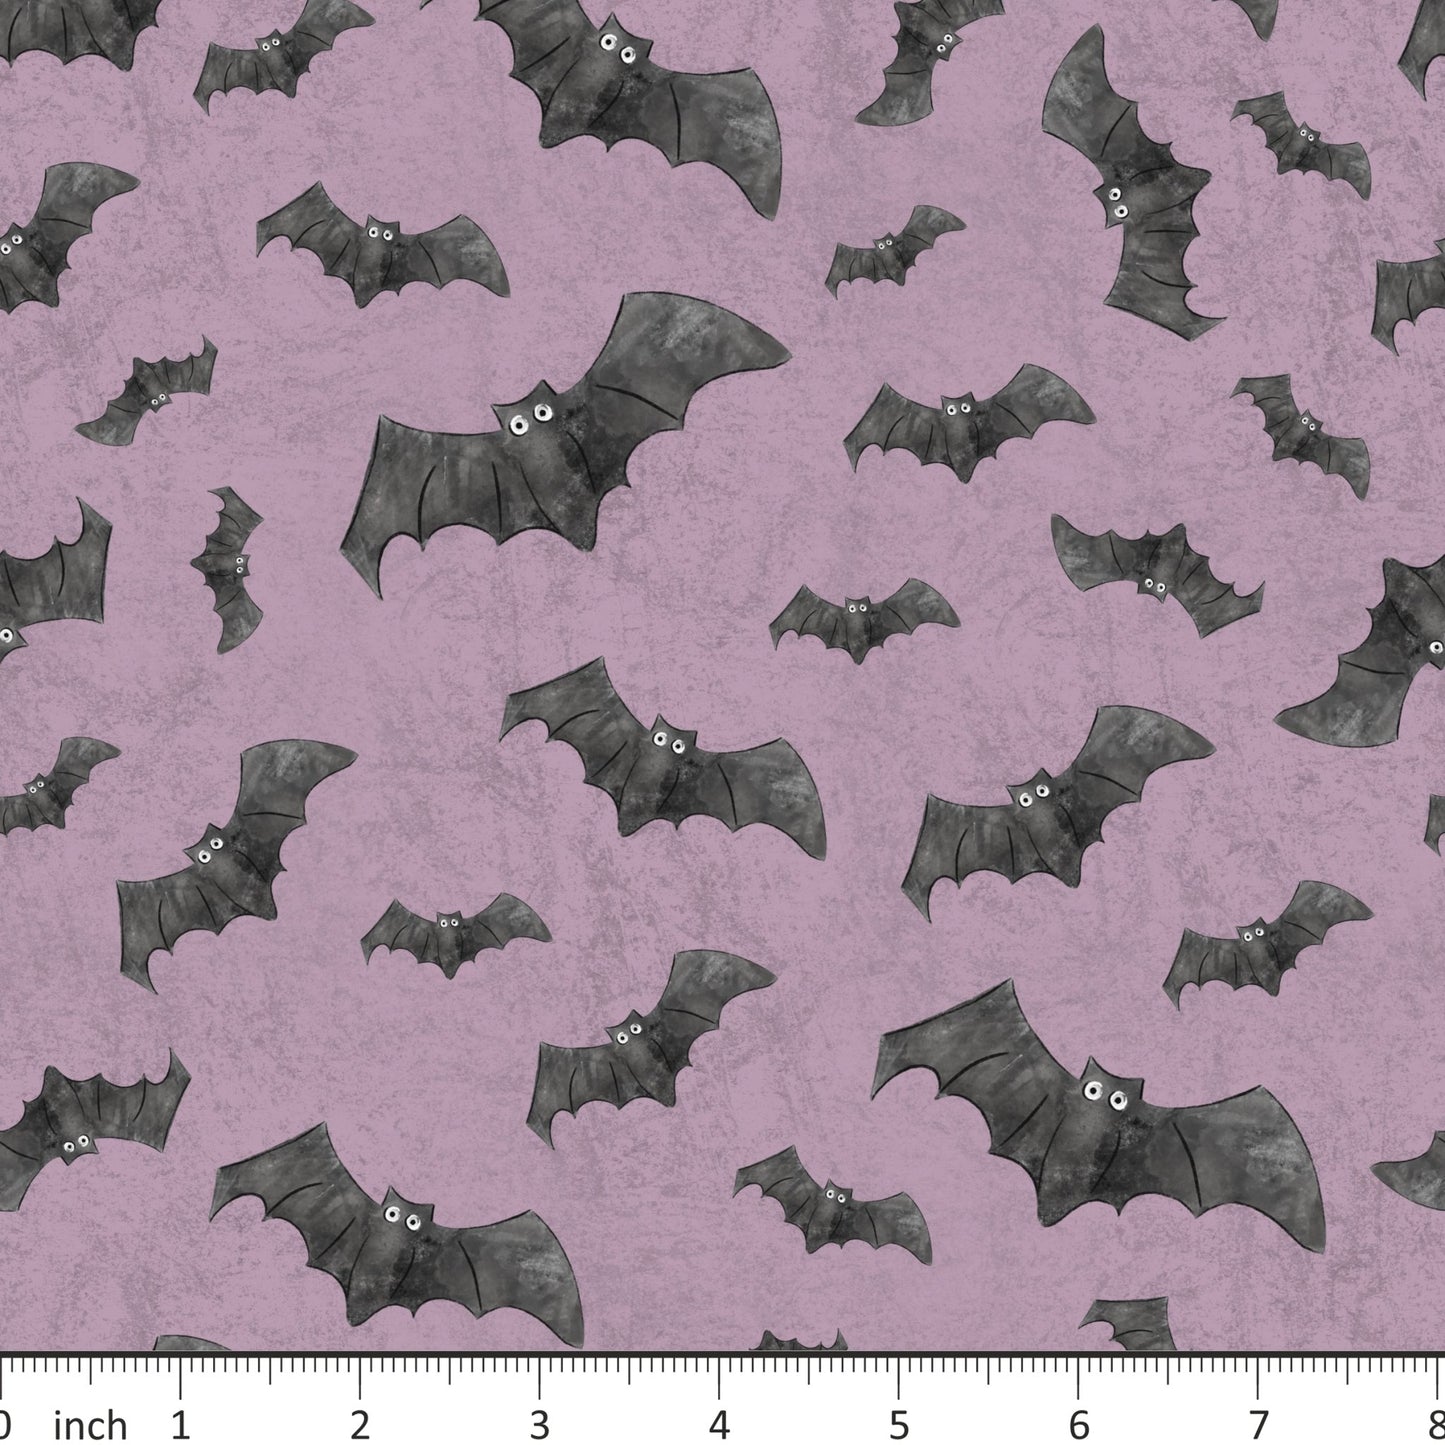 FineapplePair - Bats on Purple - Little Rhody Sewing Co.